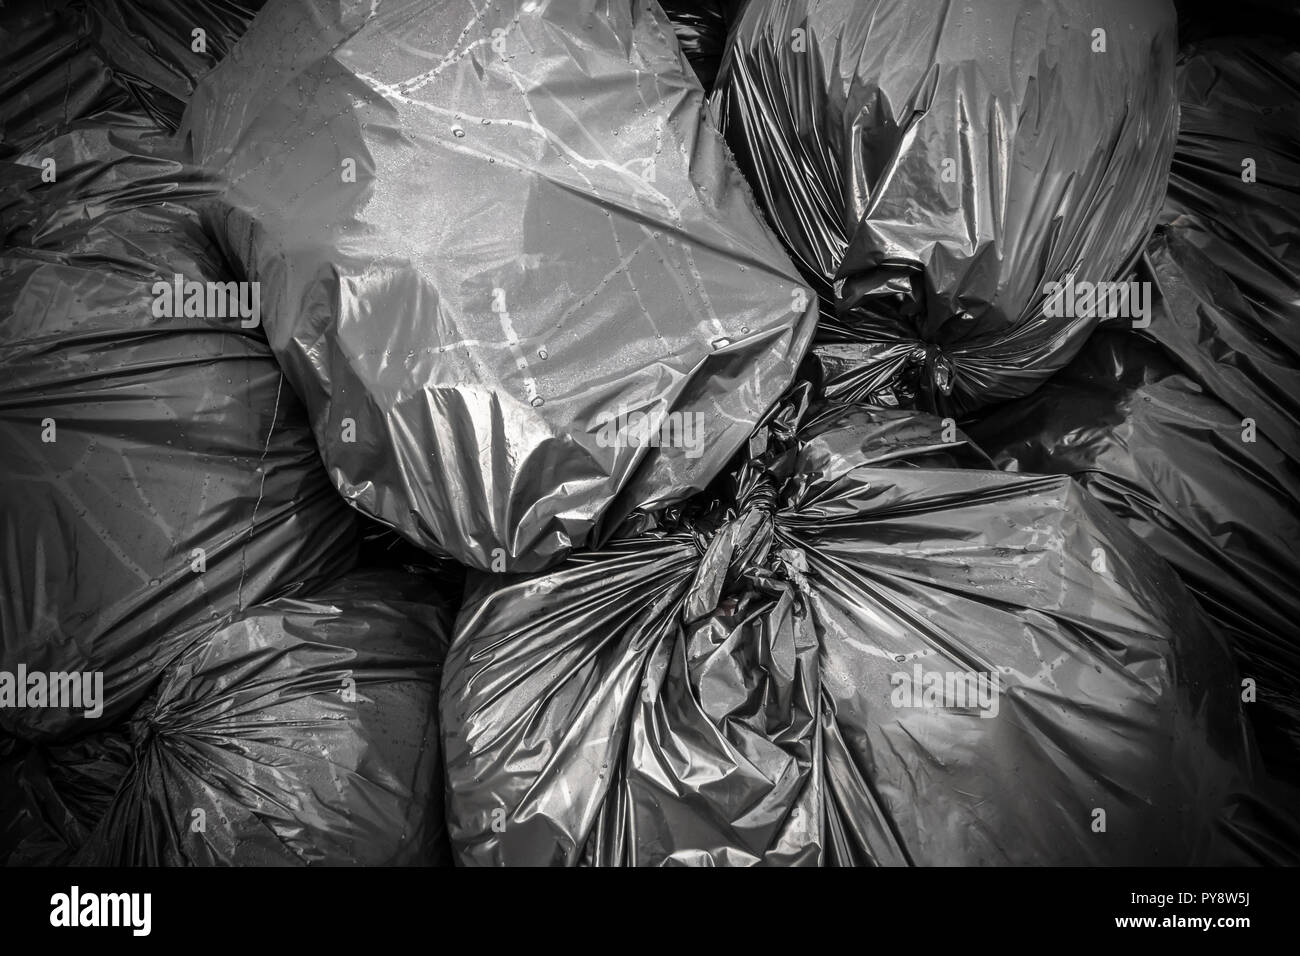 Background garbage bag , nero, rifiuti discarica di rifiuti, rifiuti, immondizia, sacchetti di plastica, la pila di posta indesiderata. Ideale per i concetti o texture. Foto Stock